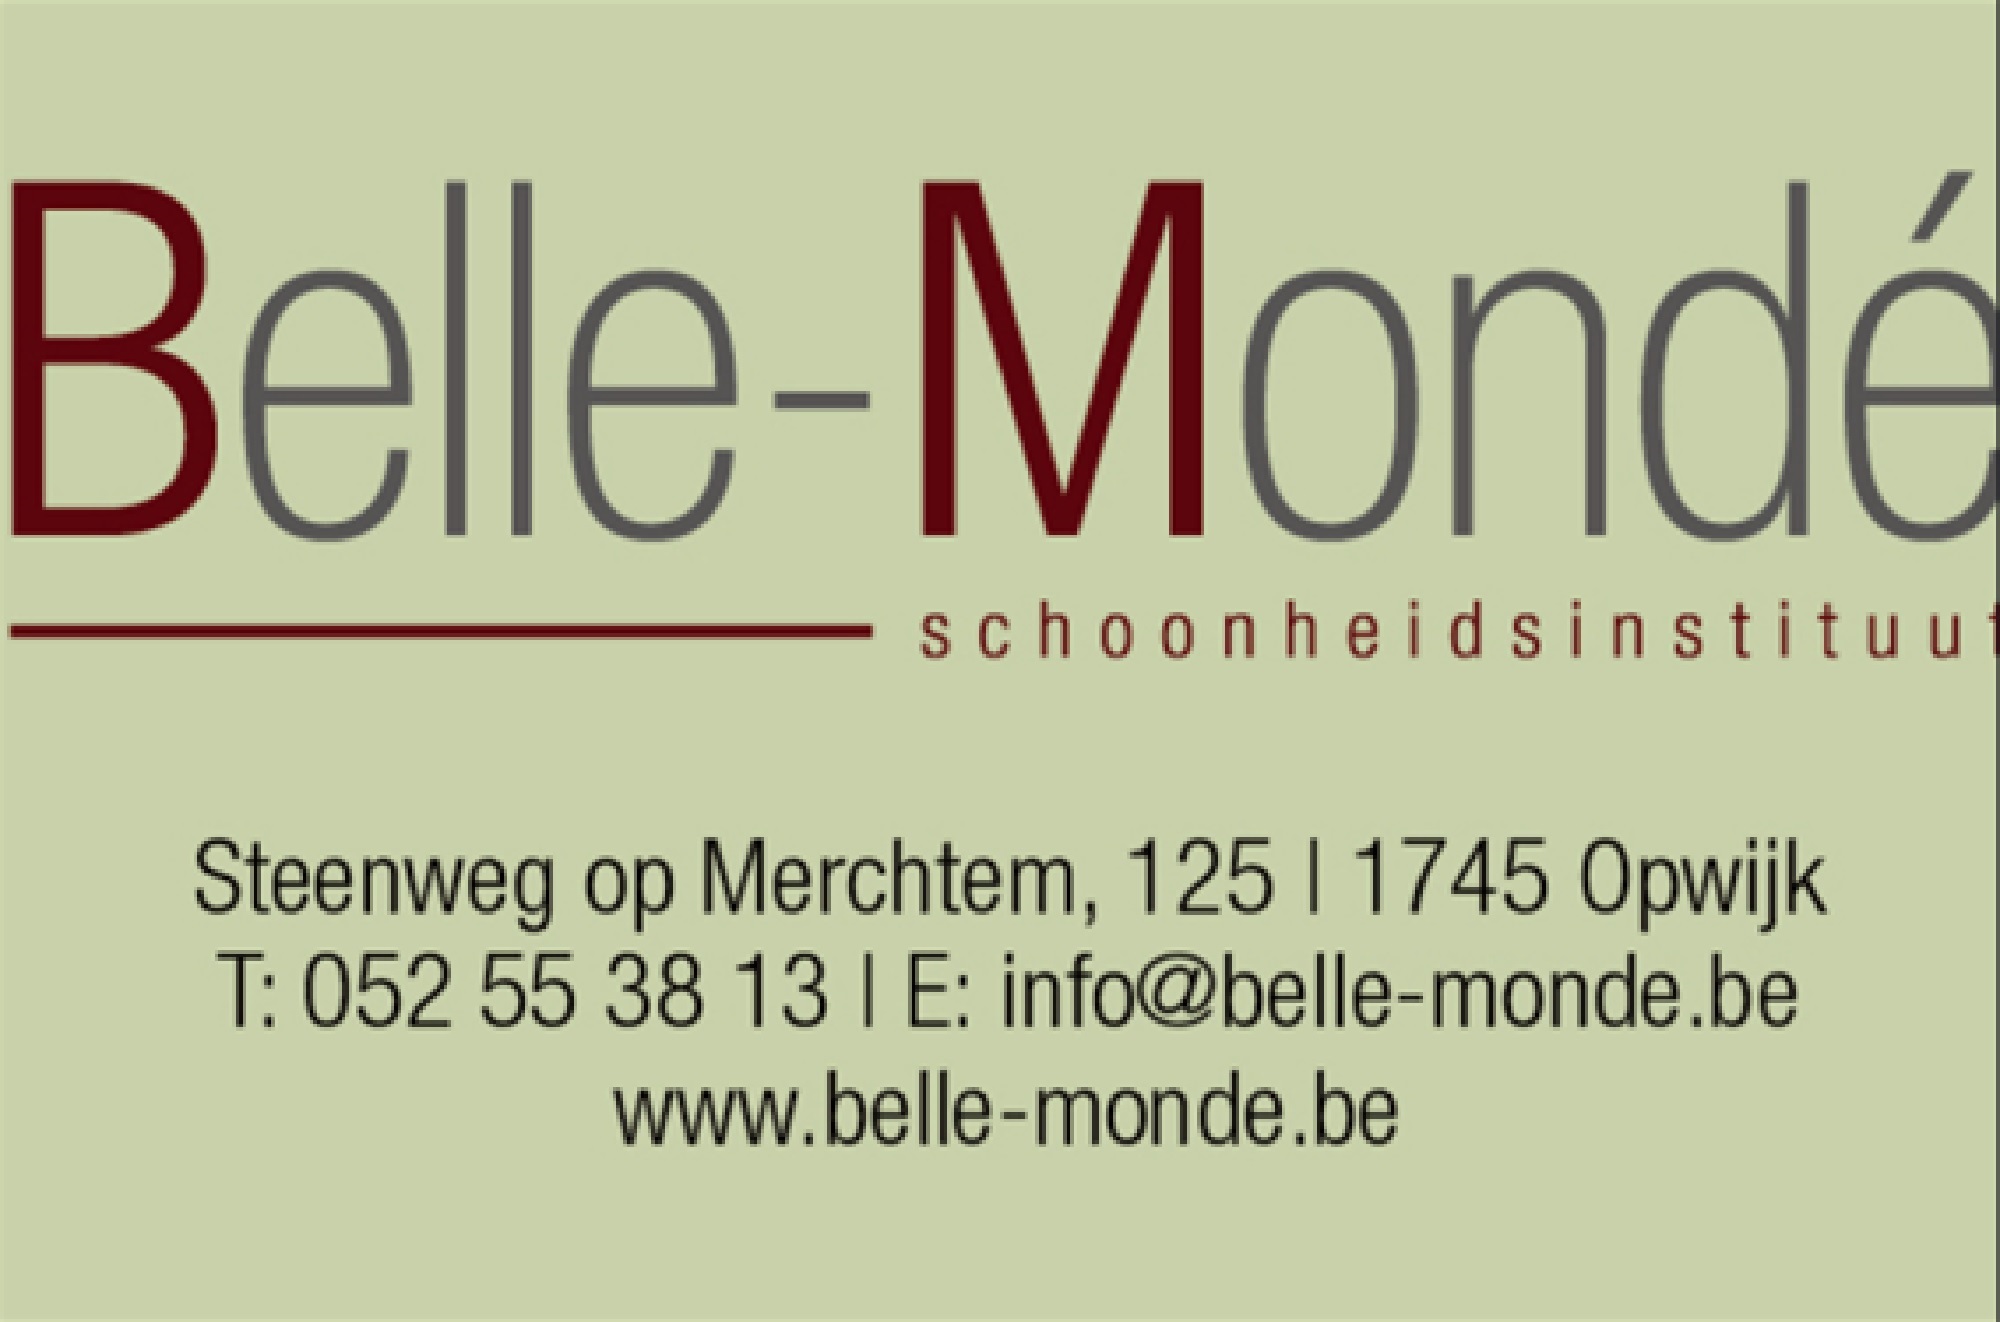 Belle Mondé